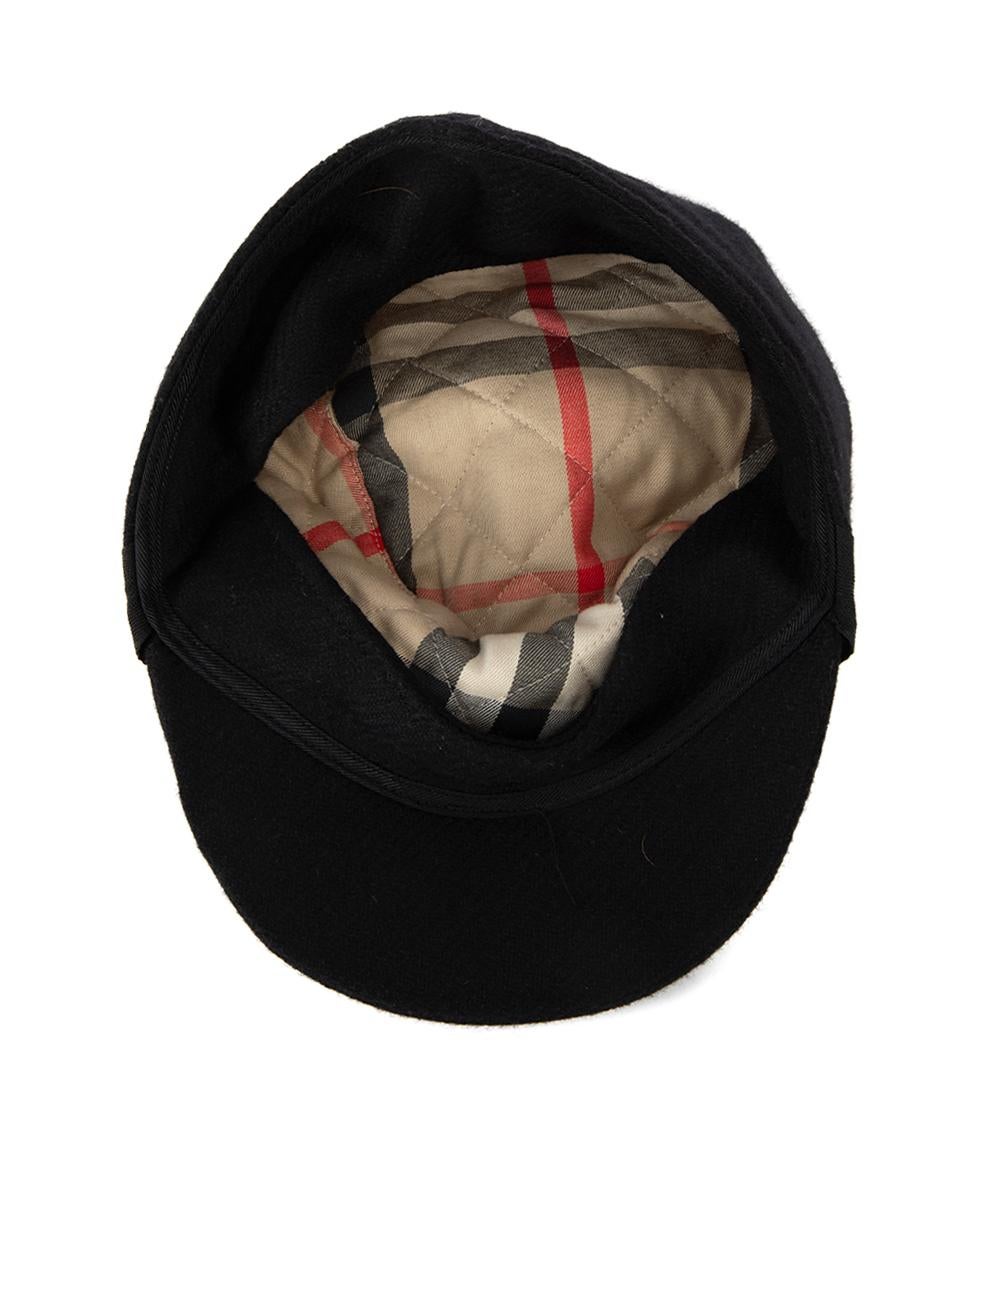 Burberry Women's Black Pom Pom Accent Newsboy Hat 1